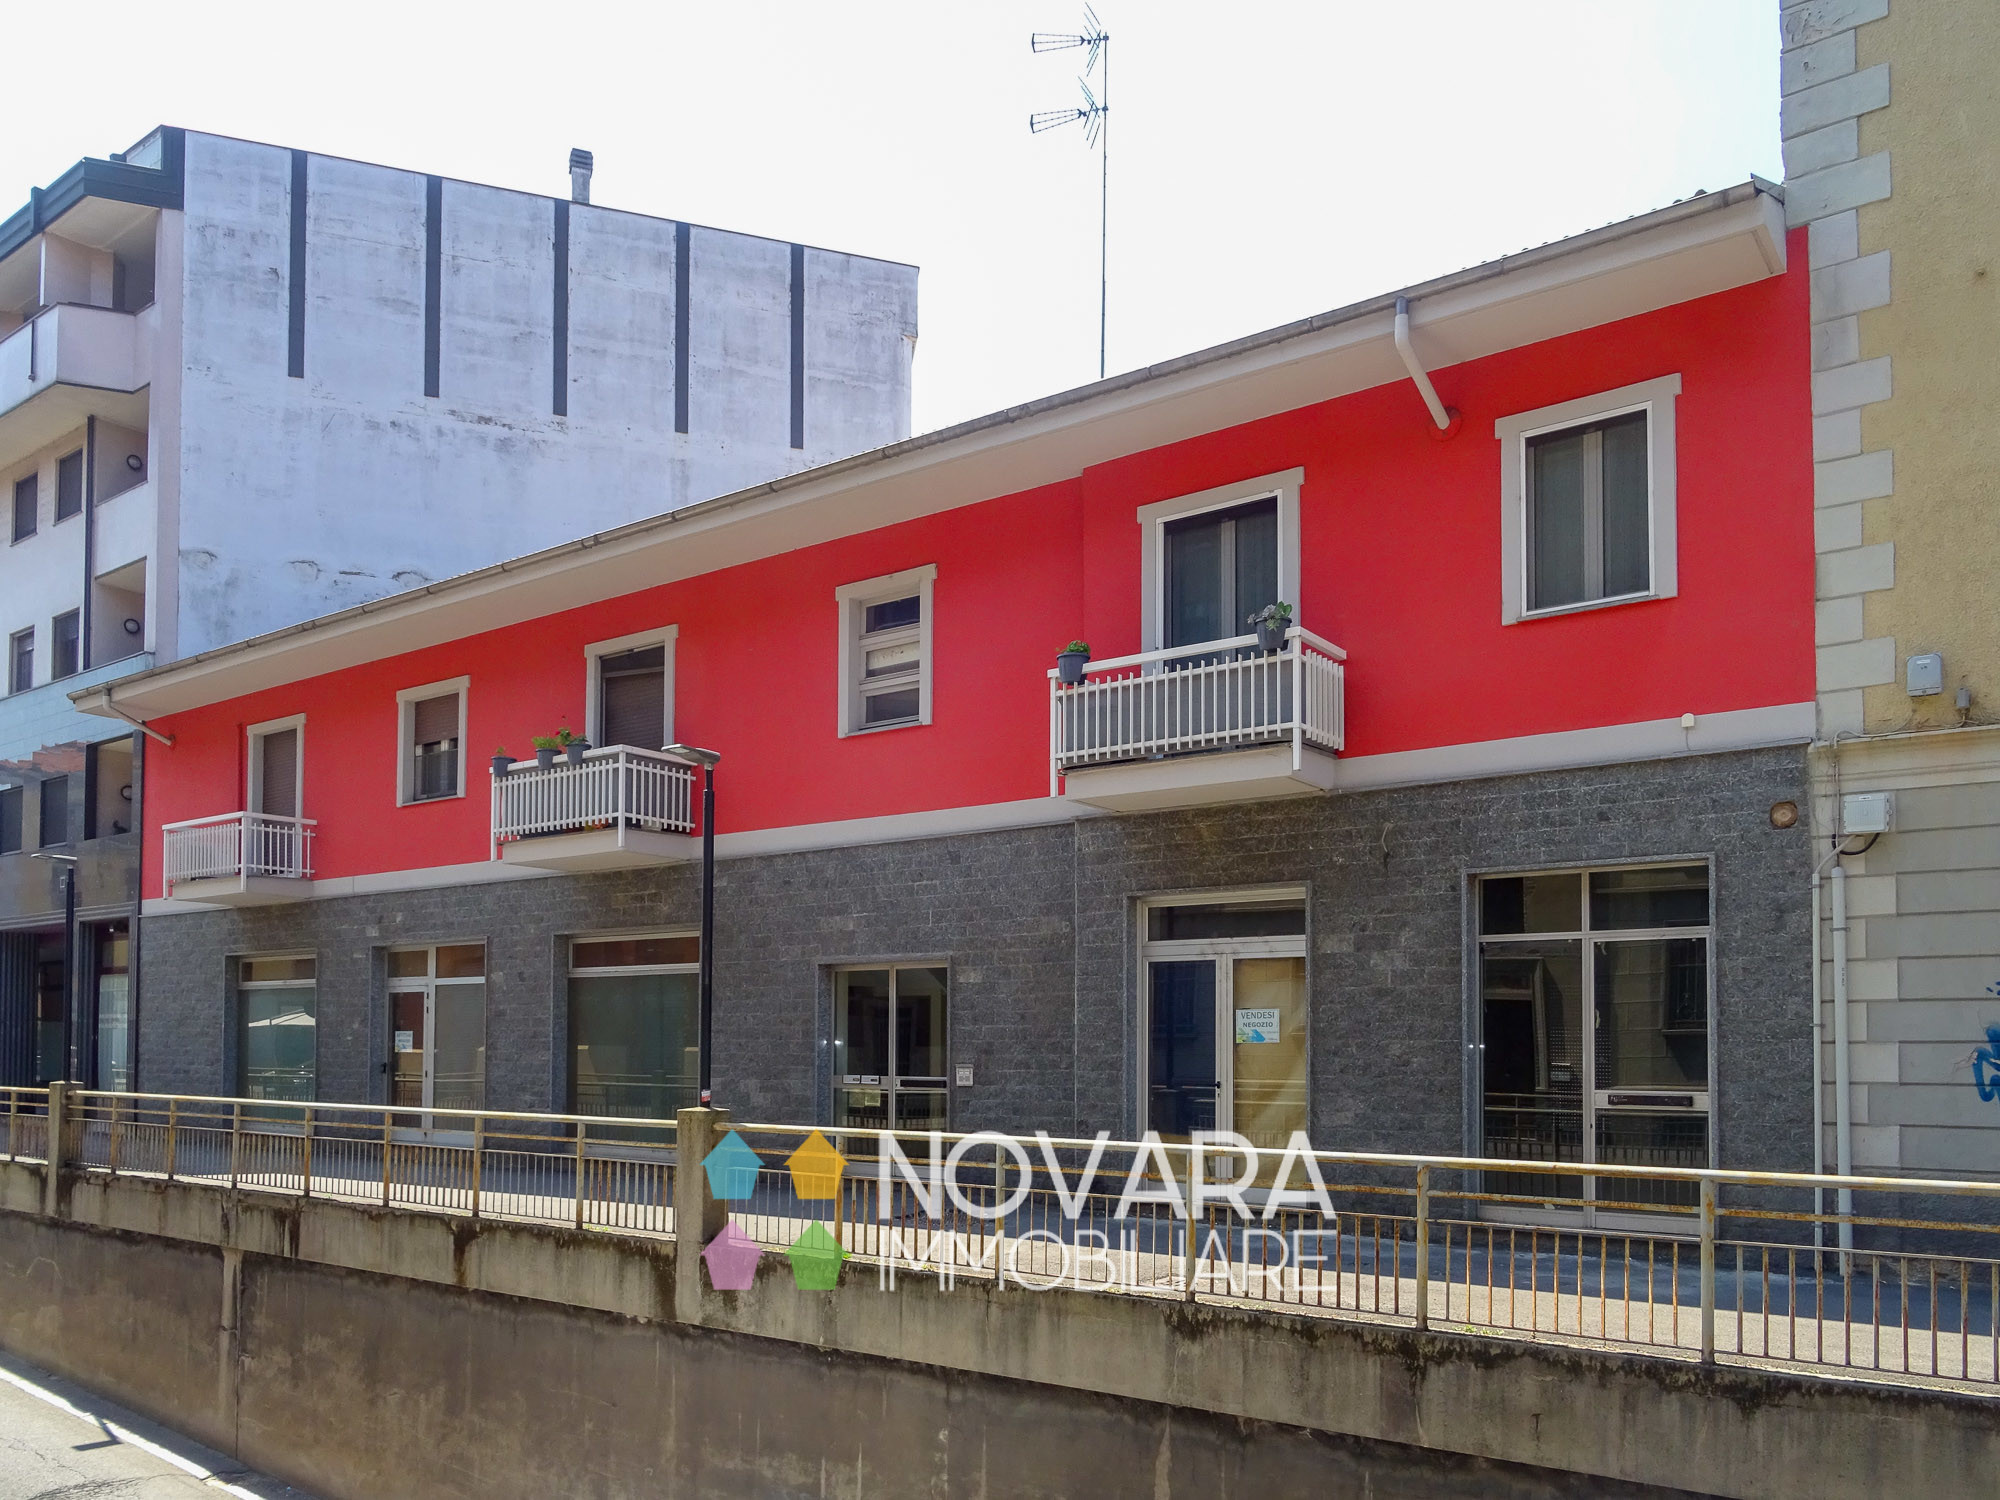 Vendita Negozio Commerciale/Industriale Novara Corso Risorgimento 3 483896